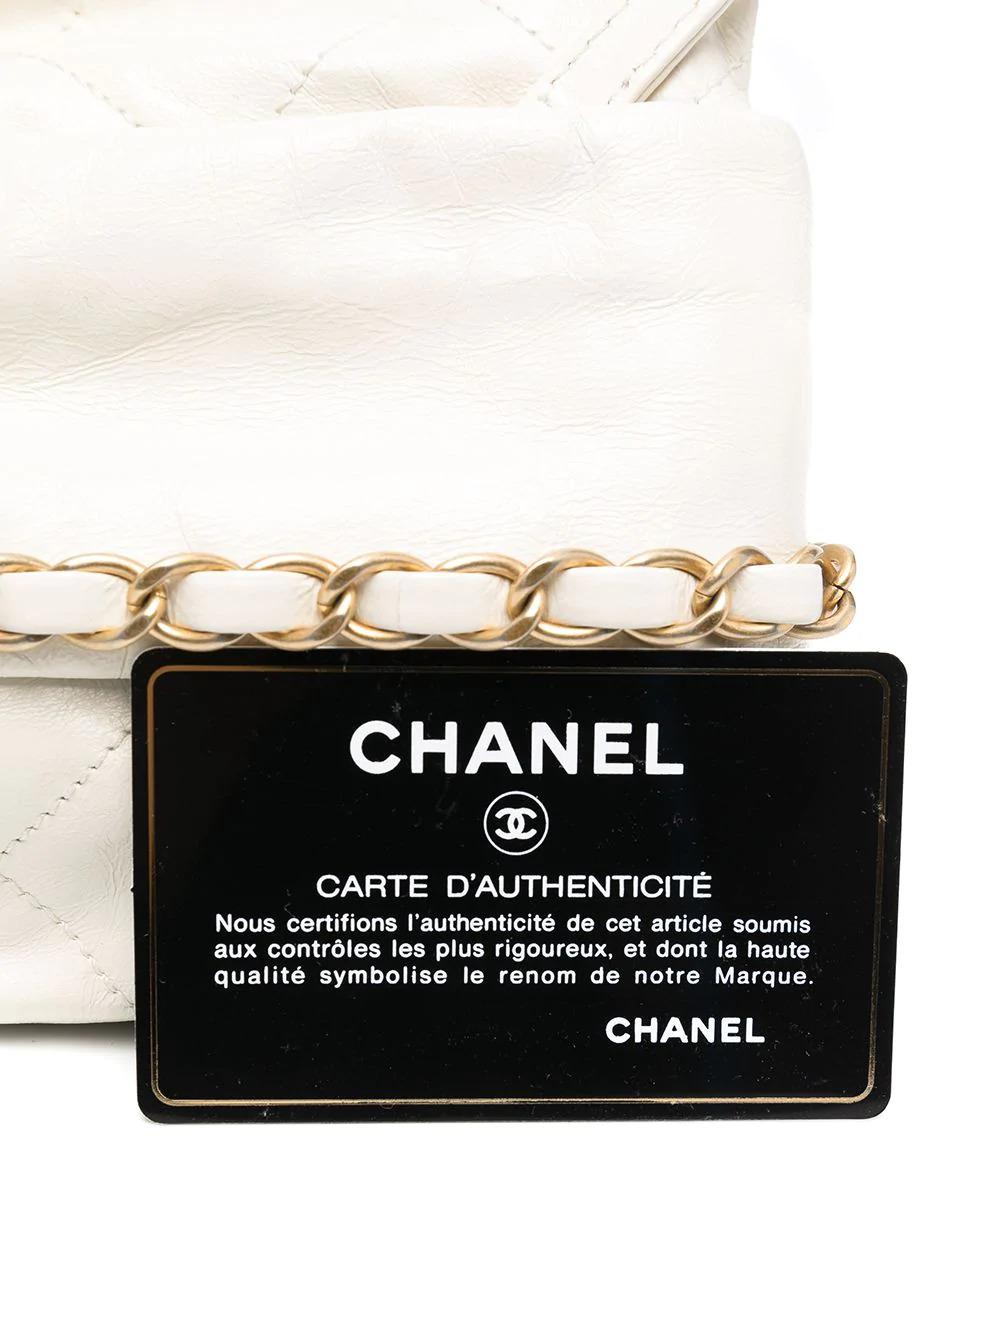  Édition limitée Chanel Paris-Bombay  Sac à colis Pour femmes 